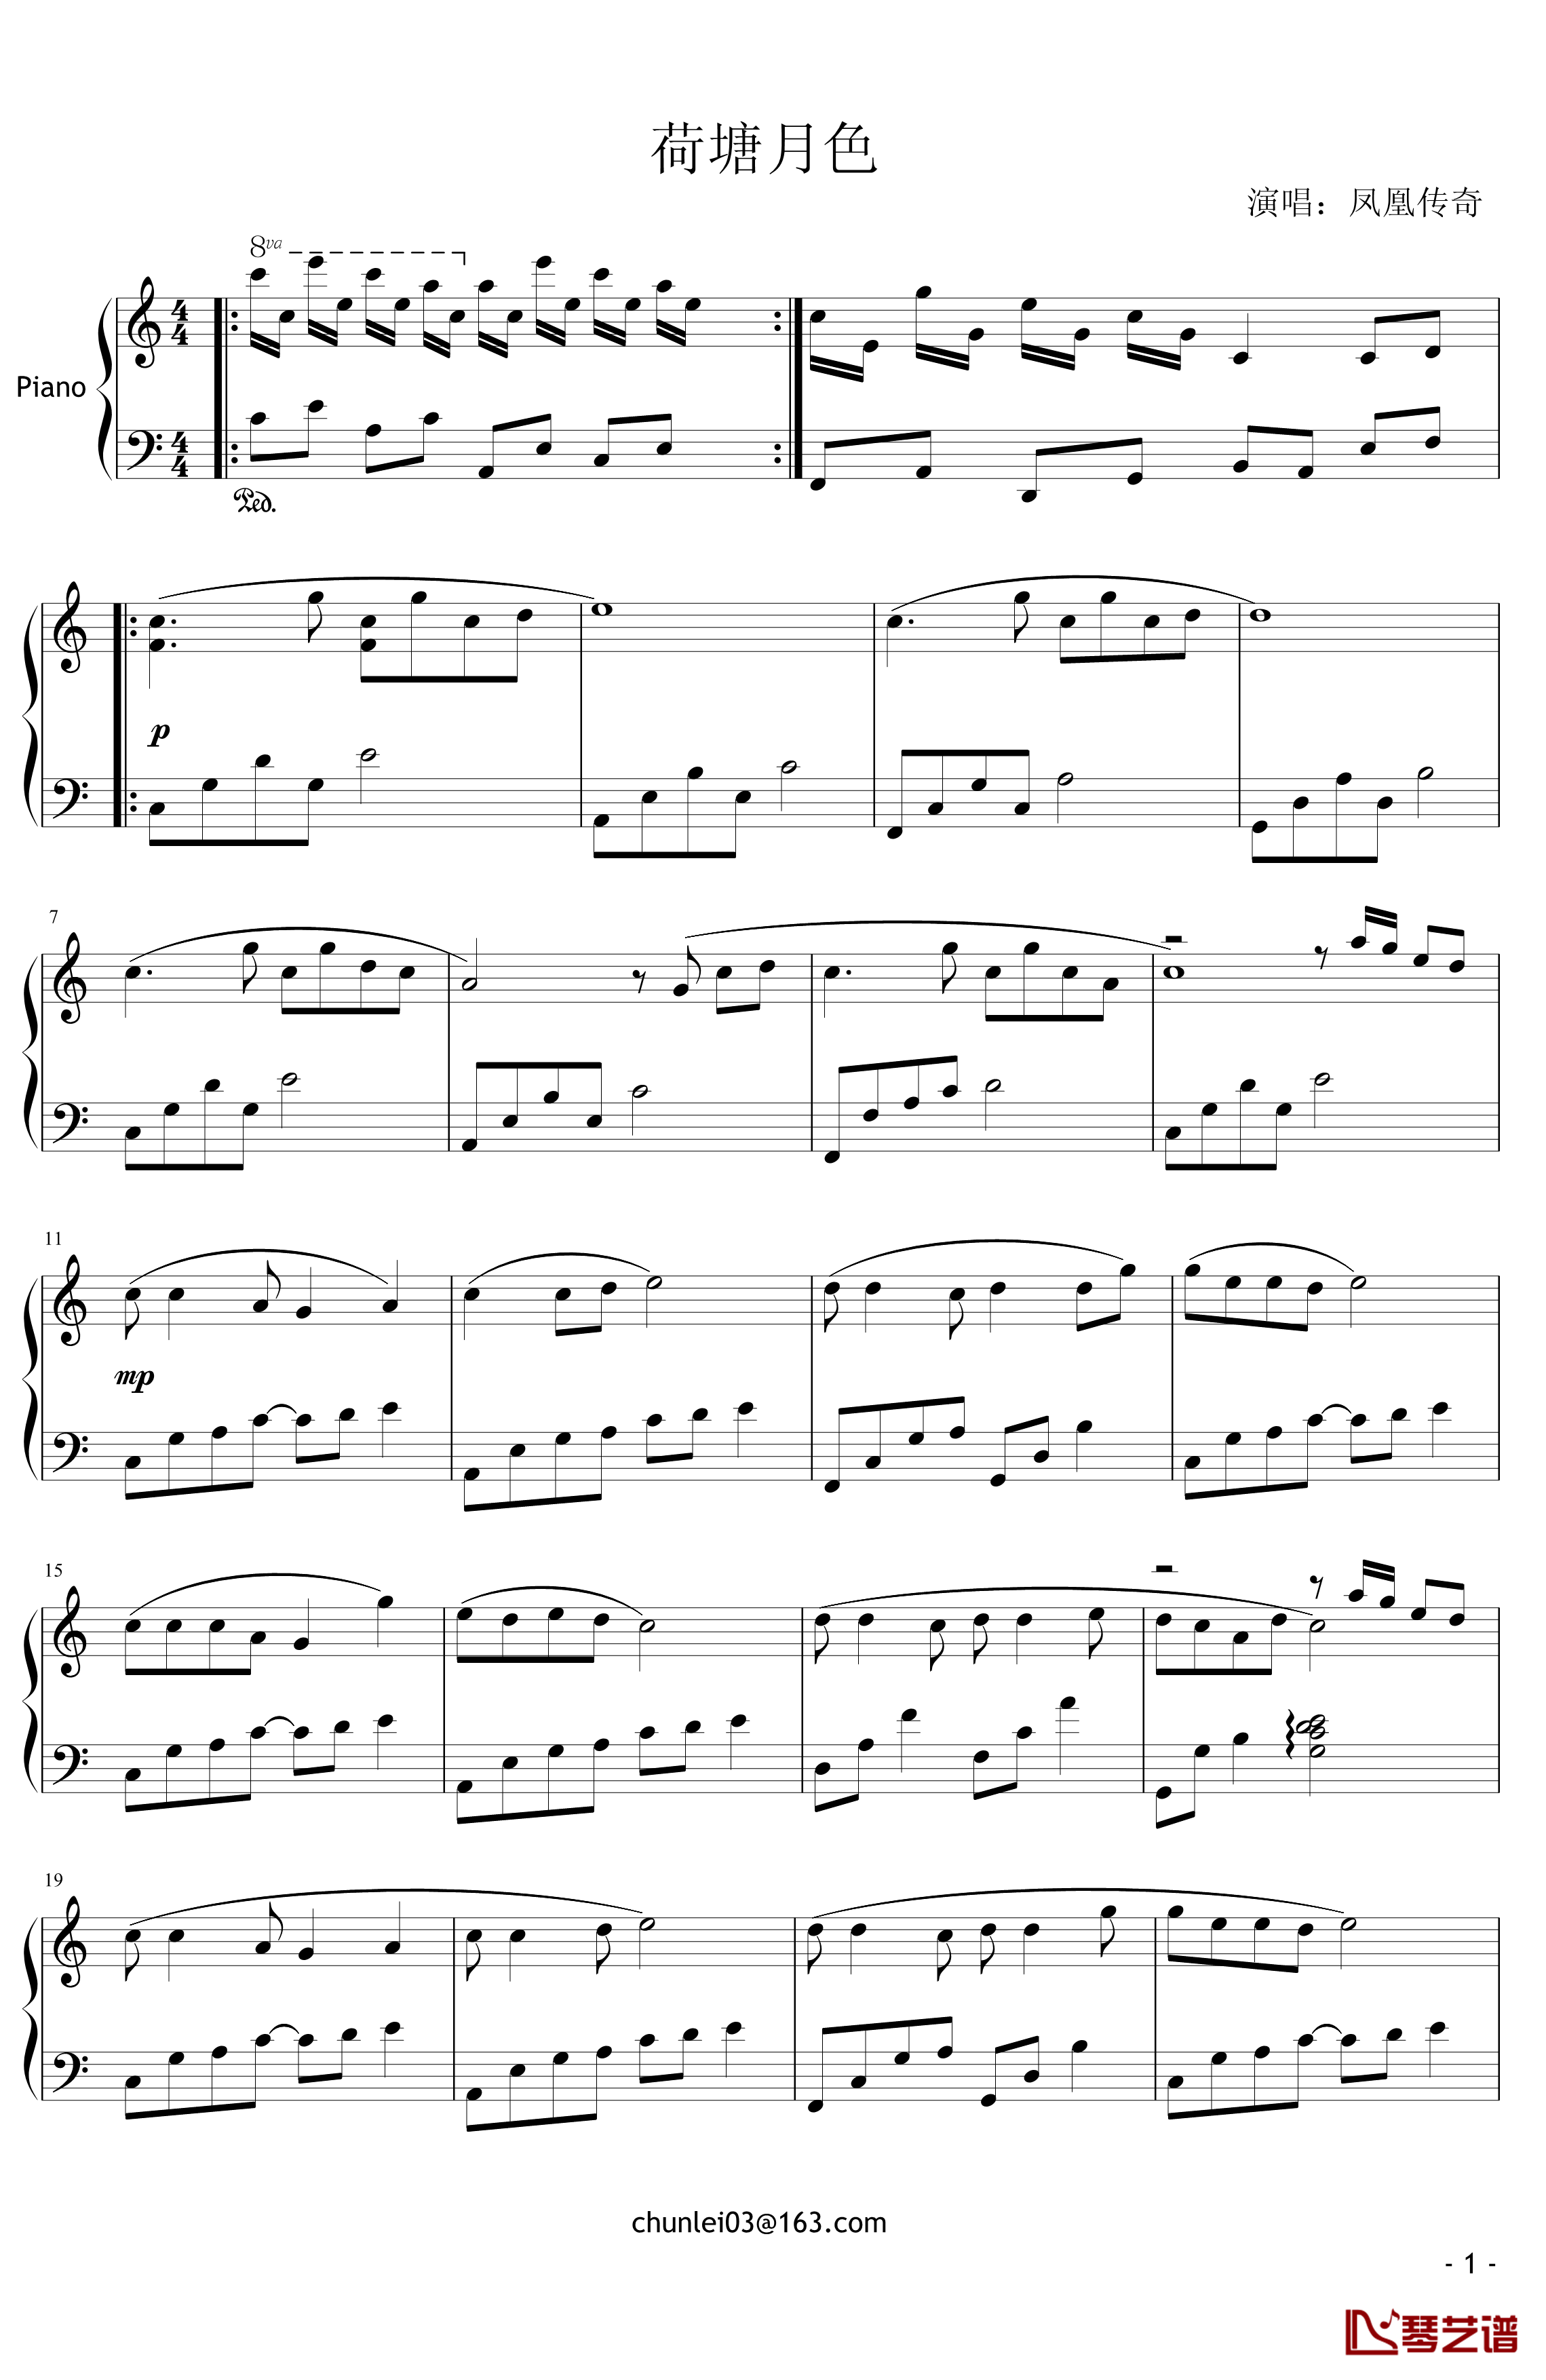 荷塘月色钢琴谱-凤凰传奇1